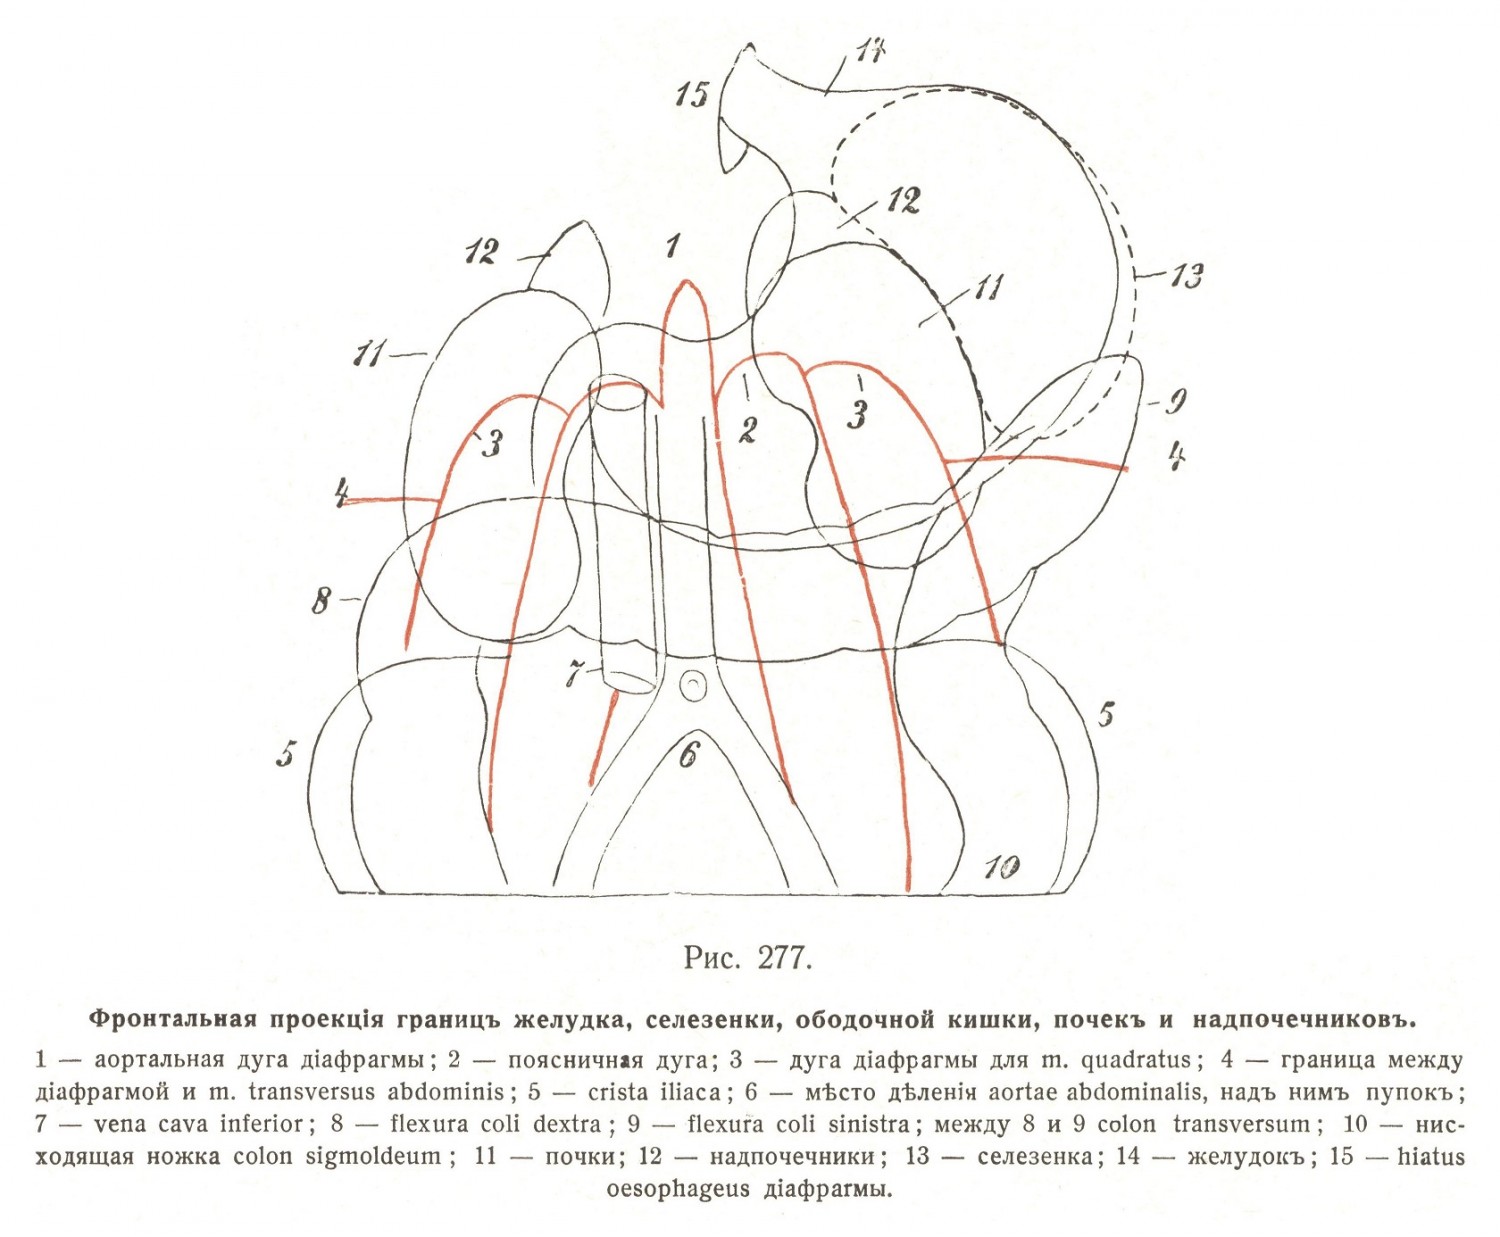 Фронтальная проекция границ желудка, селезенки, ободочной кишки, почек и надпочечников